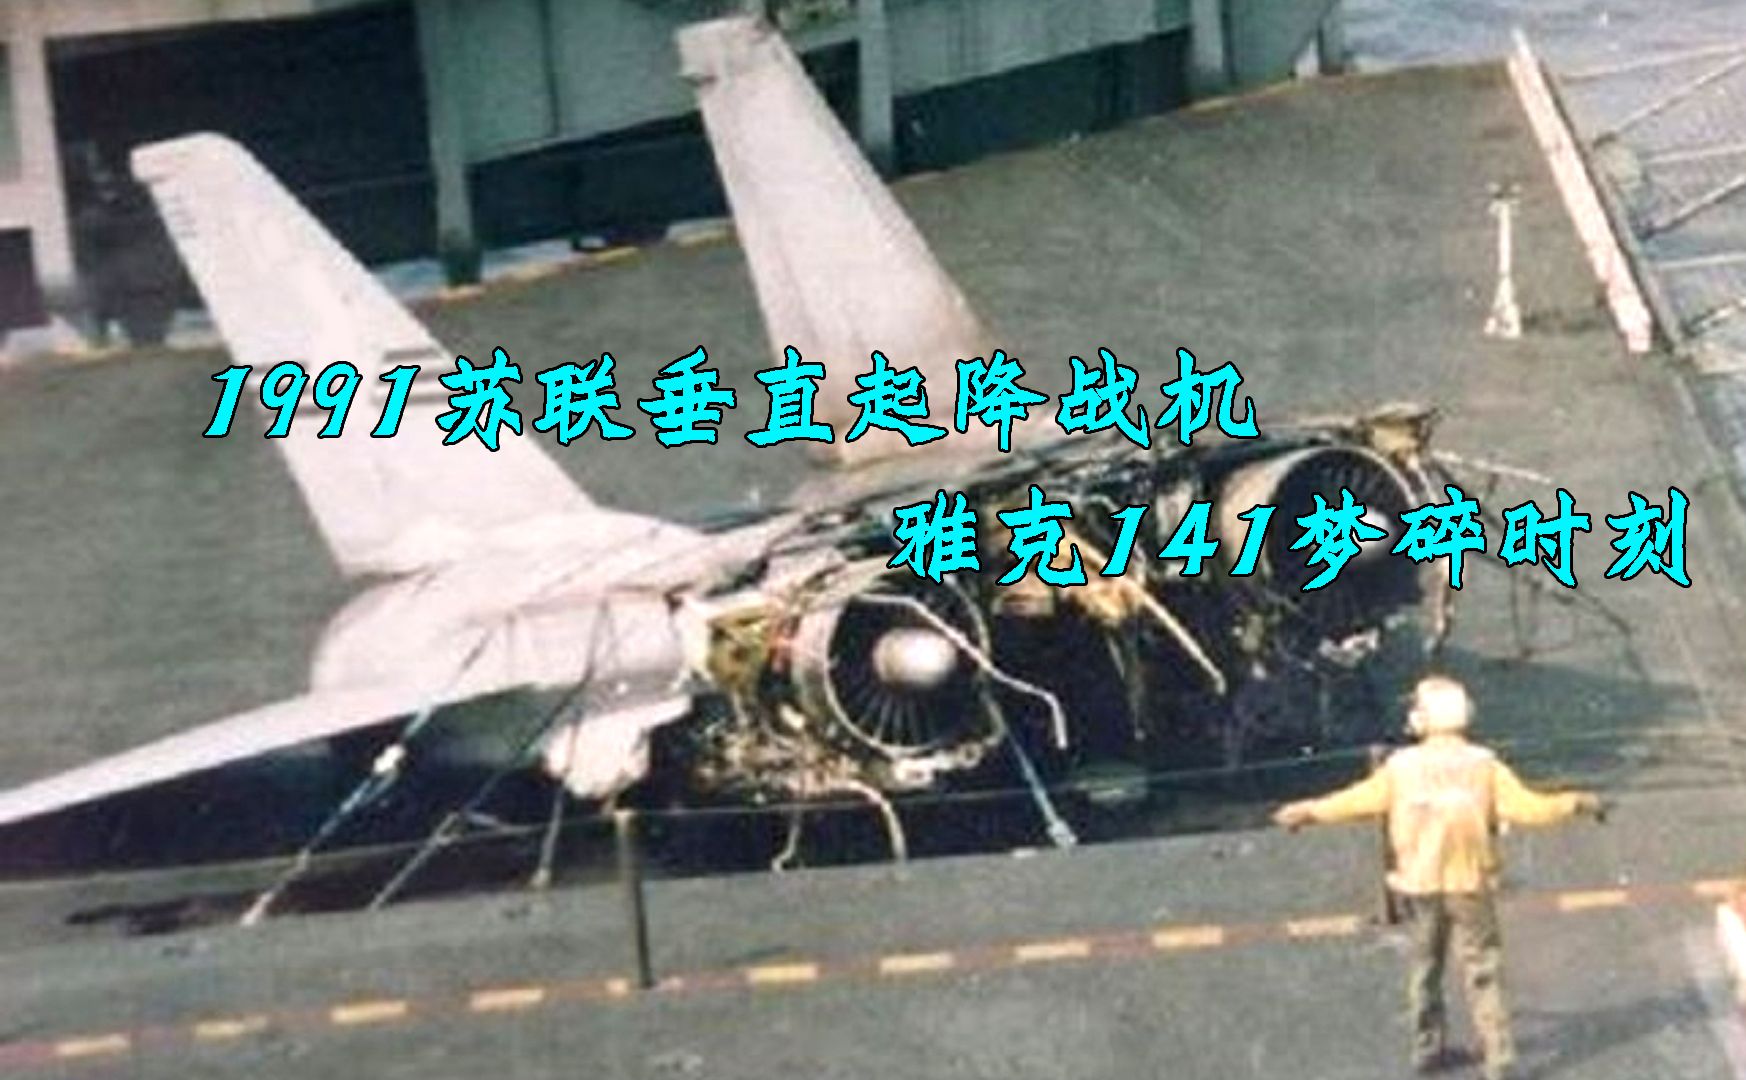 1991苏联垂直起降飞机梦碎时刻，雅克141着落航母爆炸，海军取消研发